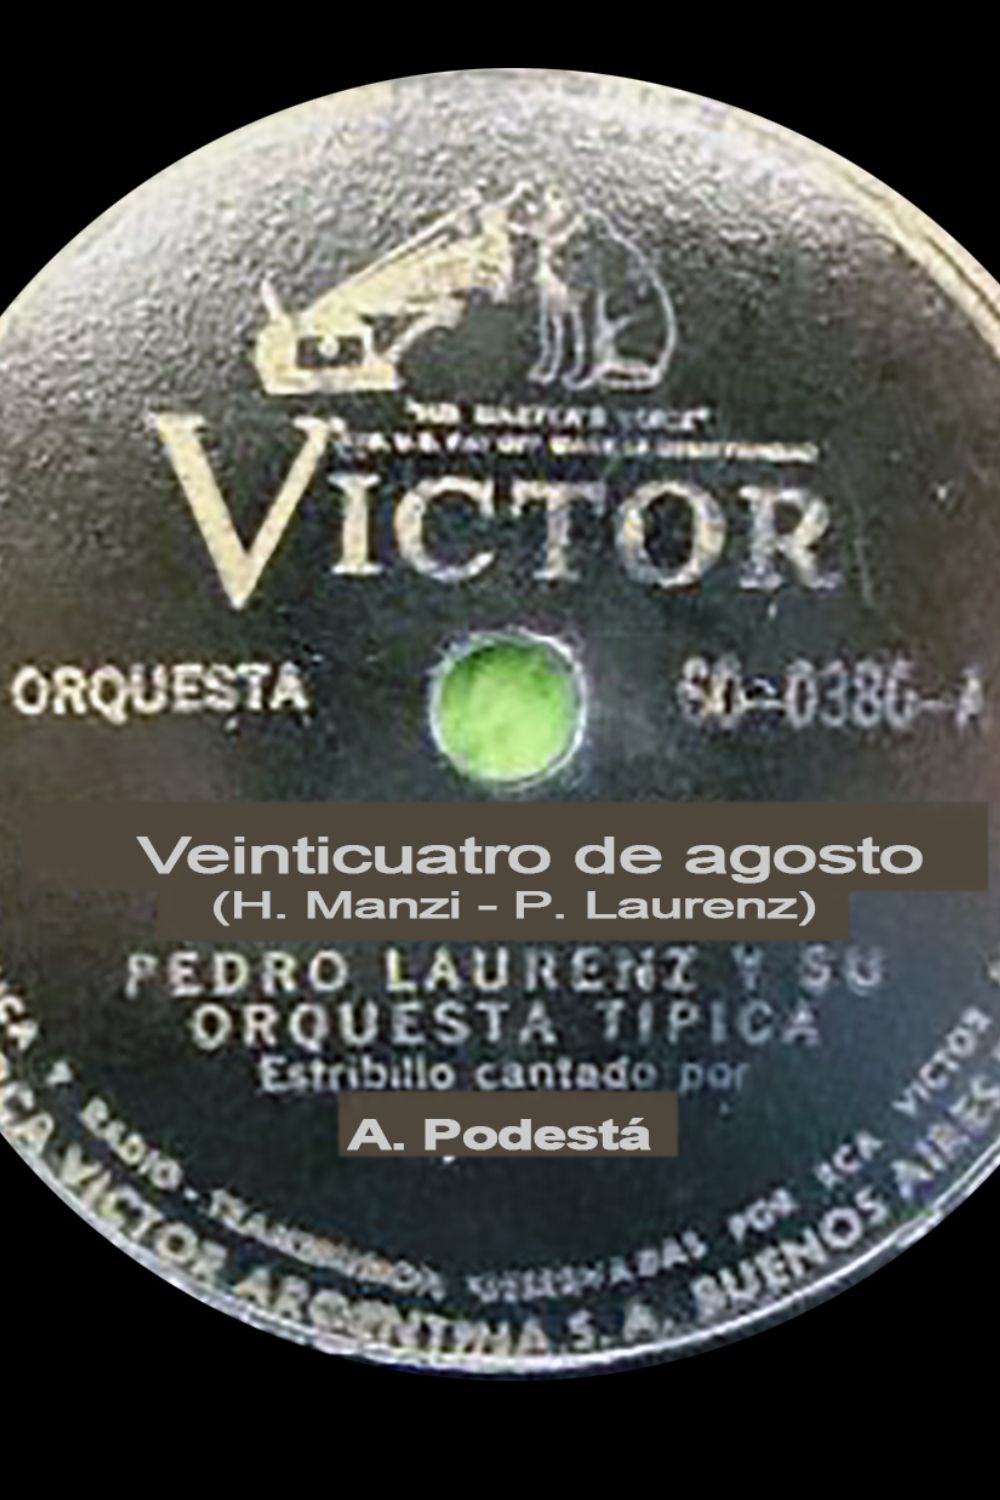 Venticuatro de agosto, Argentine Tango music vinyl disc.